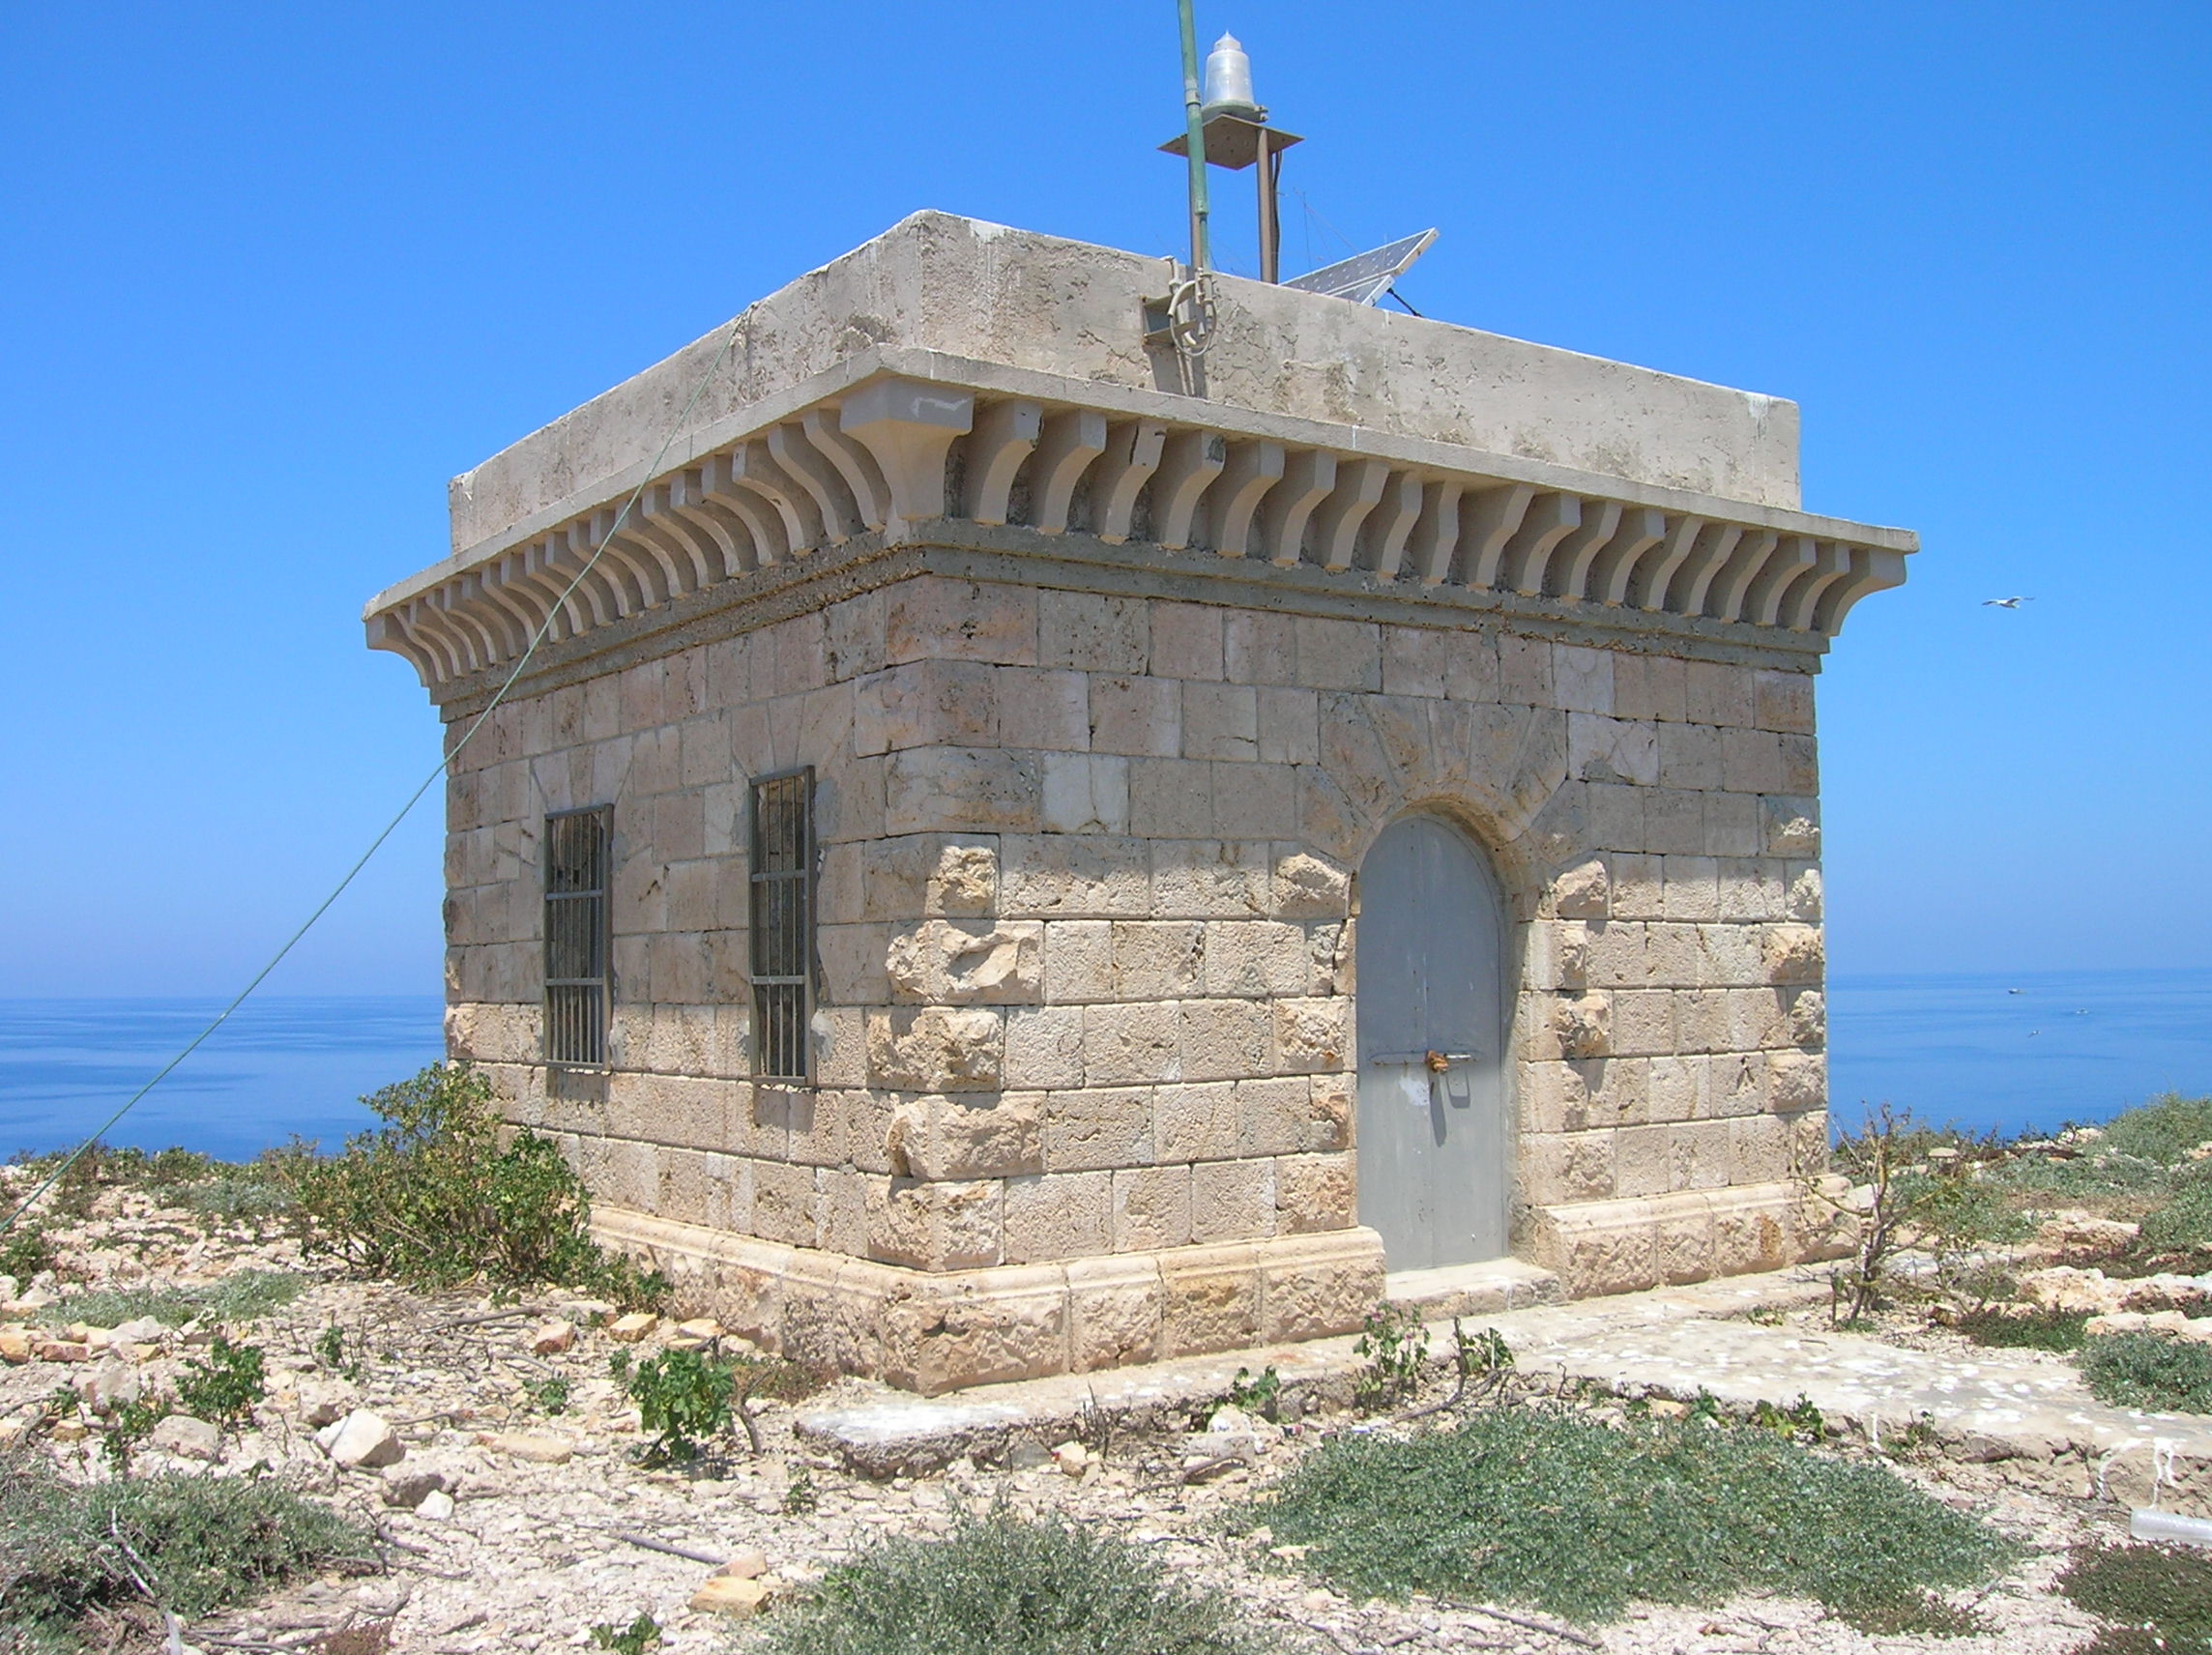 Lampione Lighthouse - Wikipedia